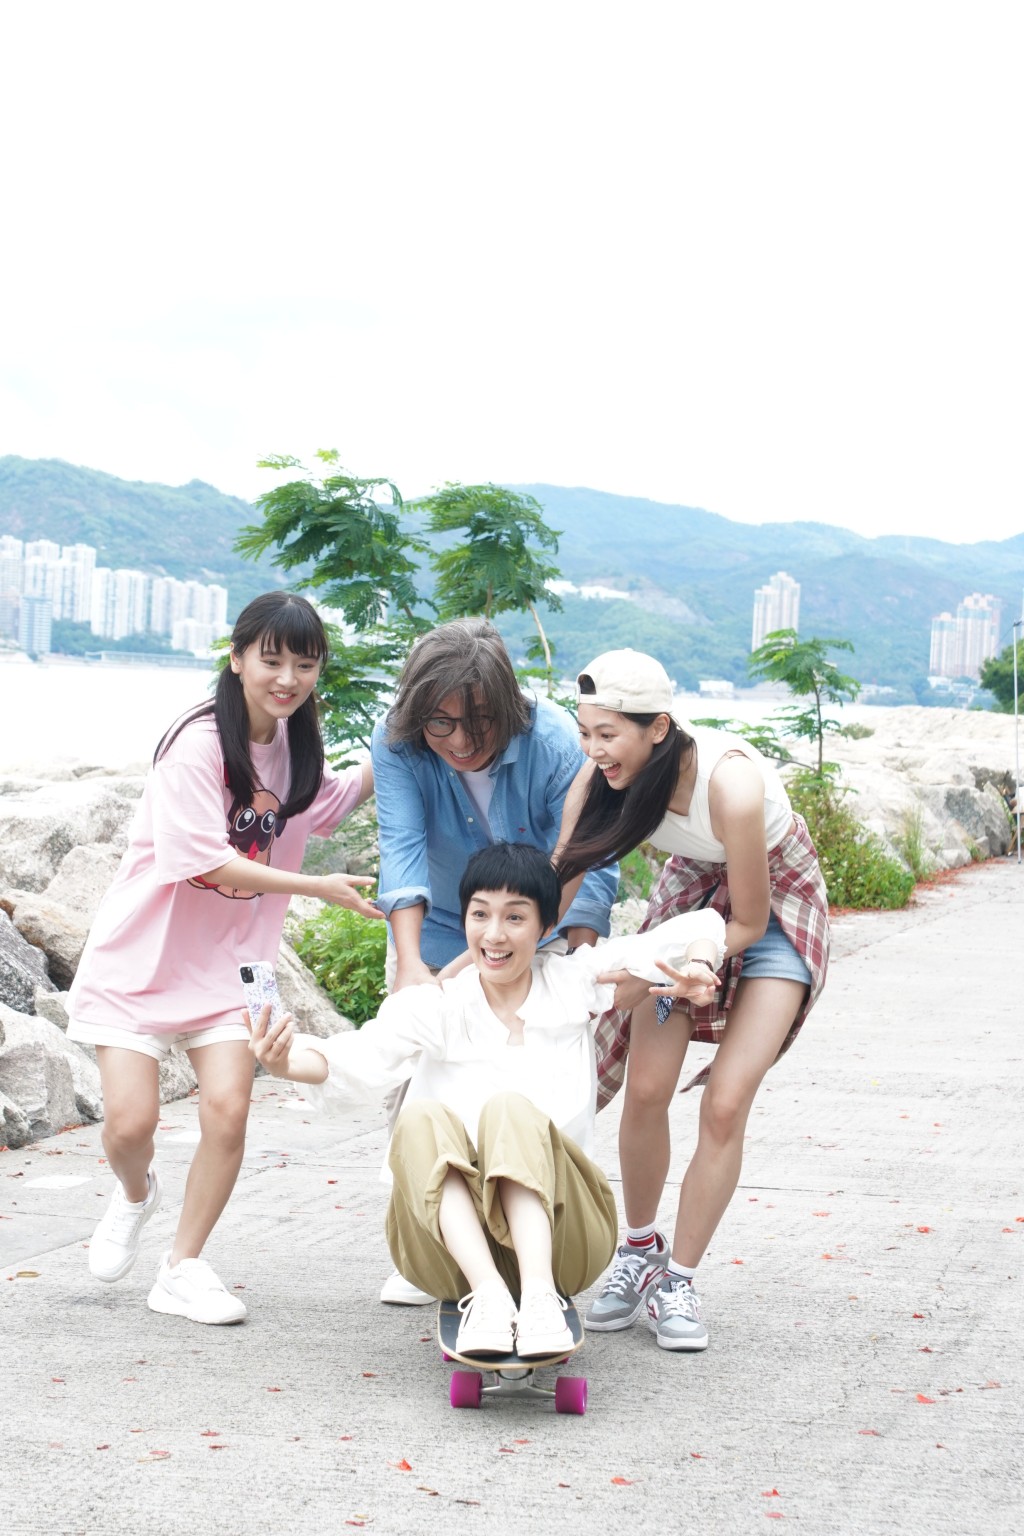 郭柏妍在《下流上车族》饰演林敏骢和江美仪大女「芊芊」。